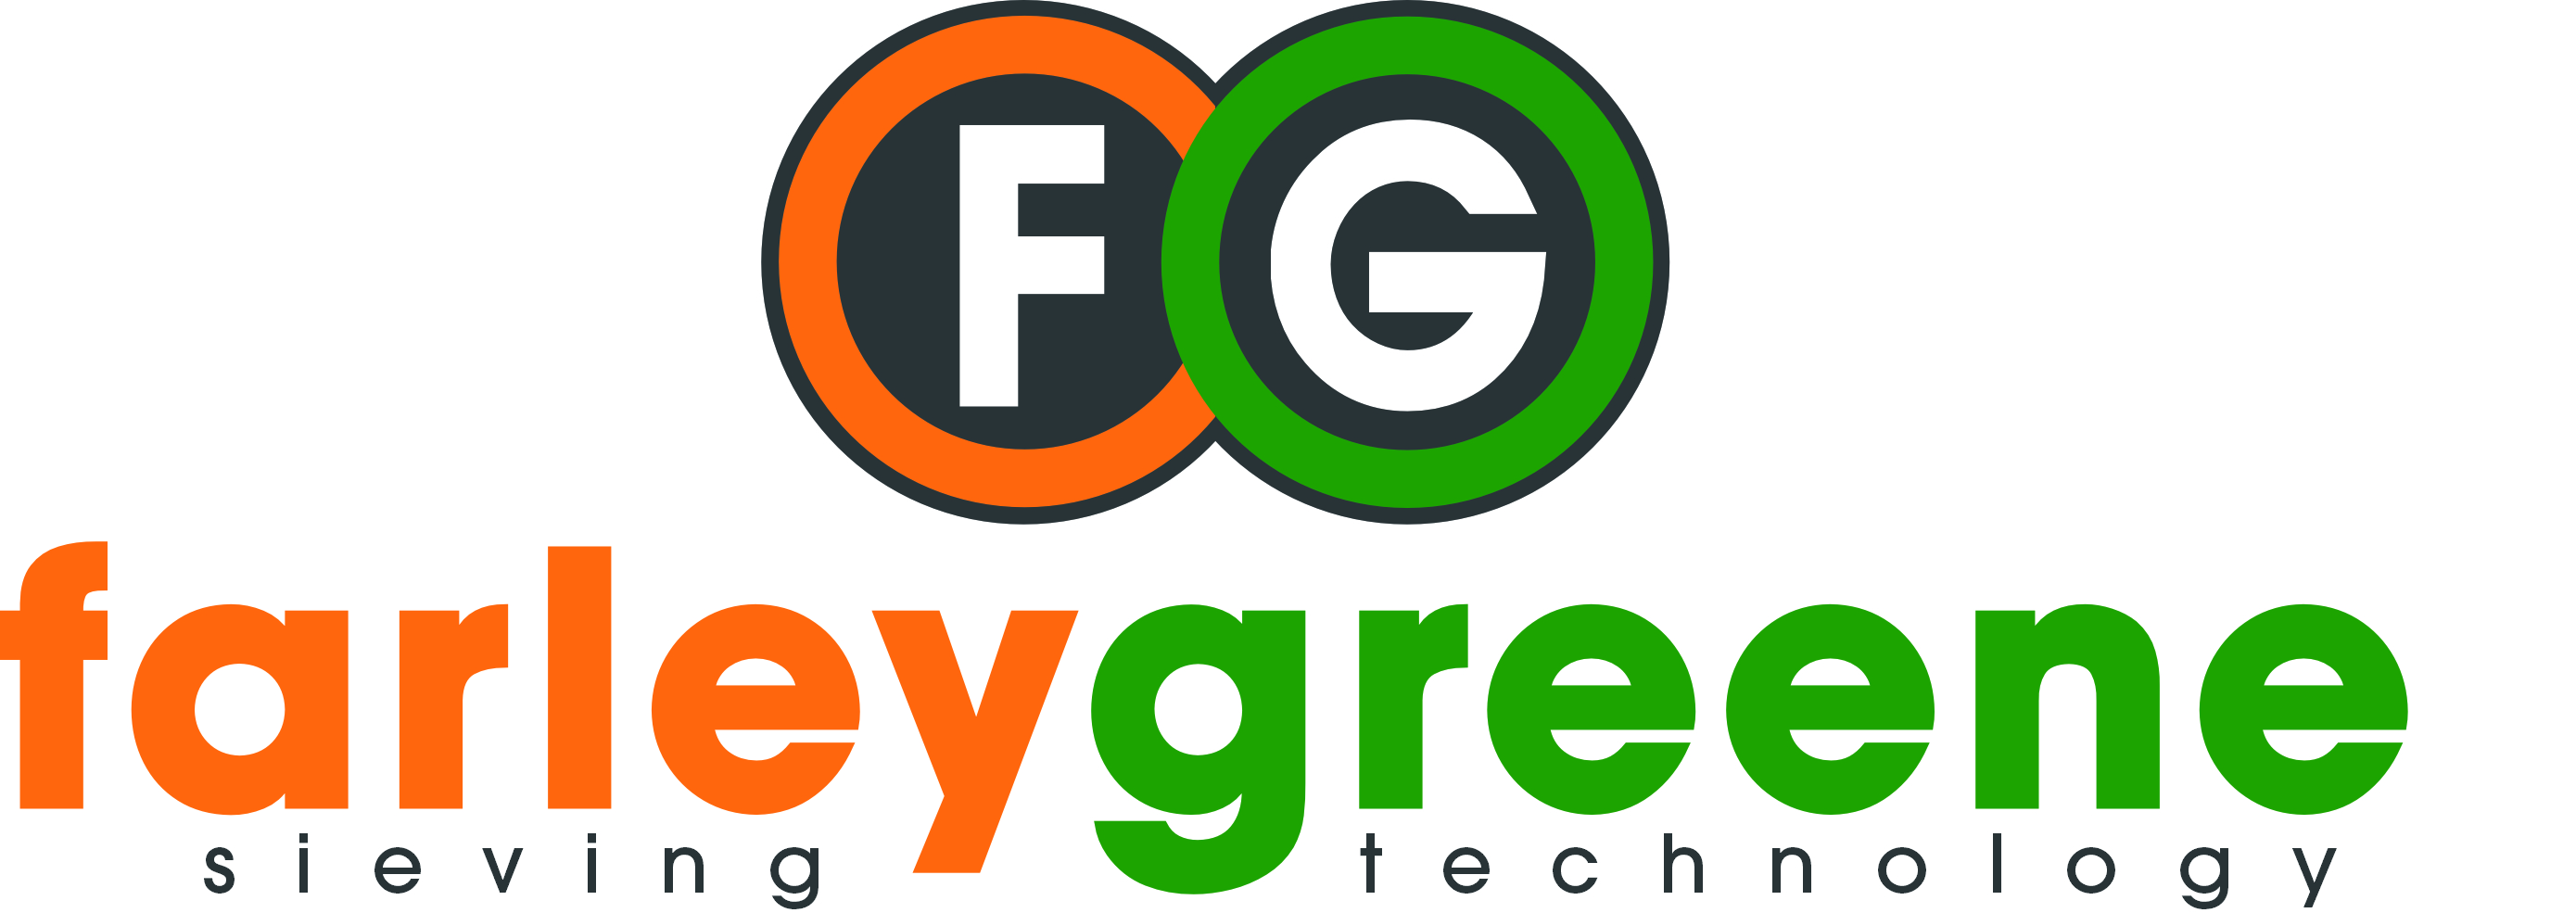 fg_full_logo.jpg